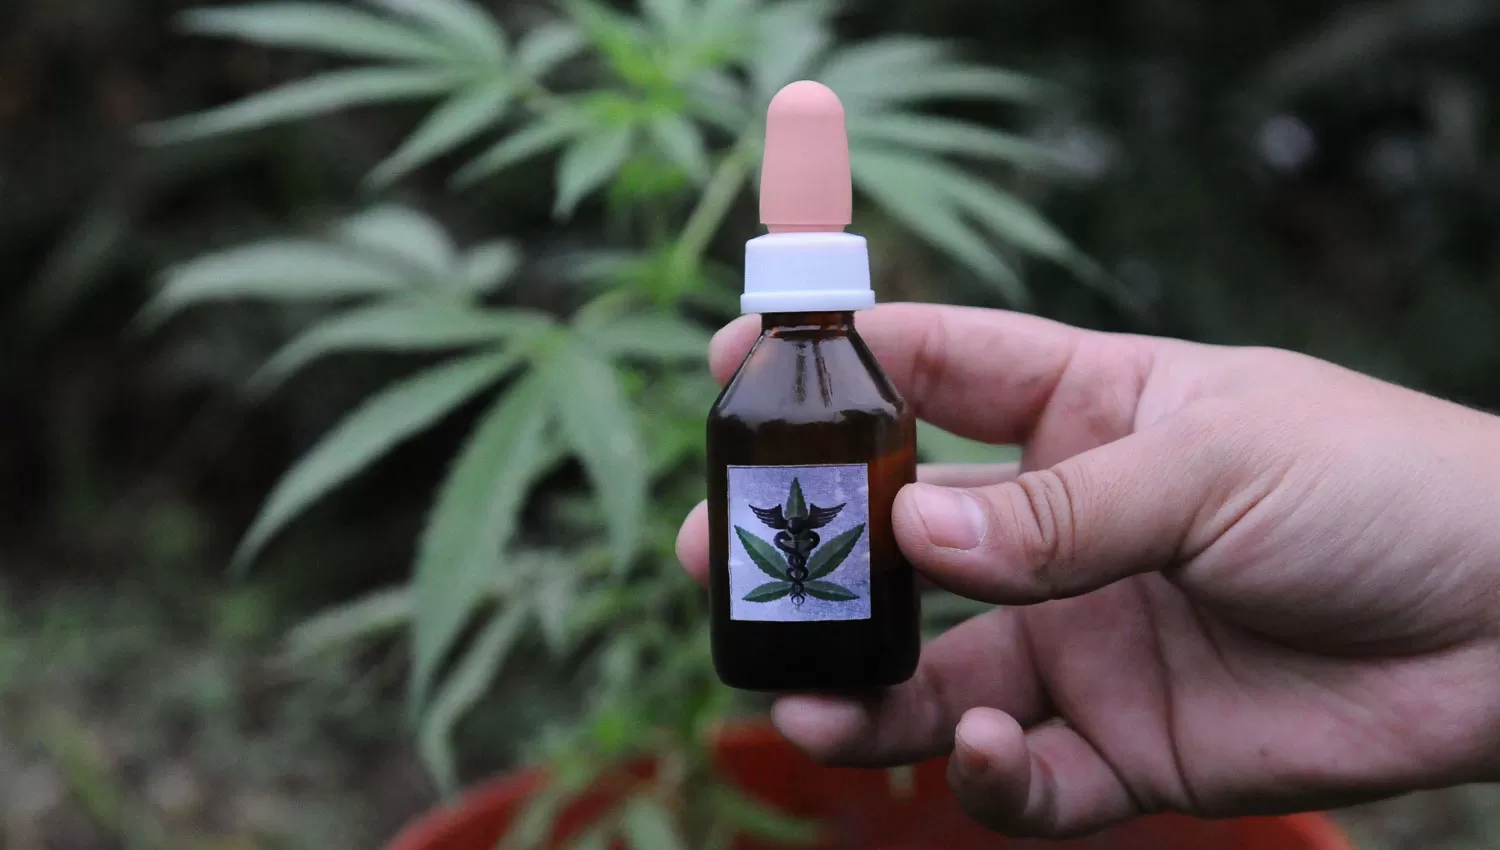 SALUD. El uso medicinal del cannabis es el primer paso para descubrir las cualidades de esta planta milenaria.